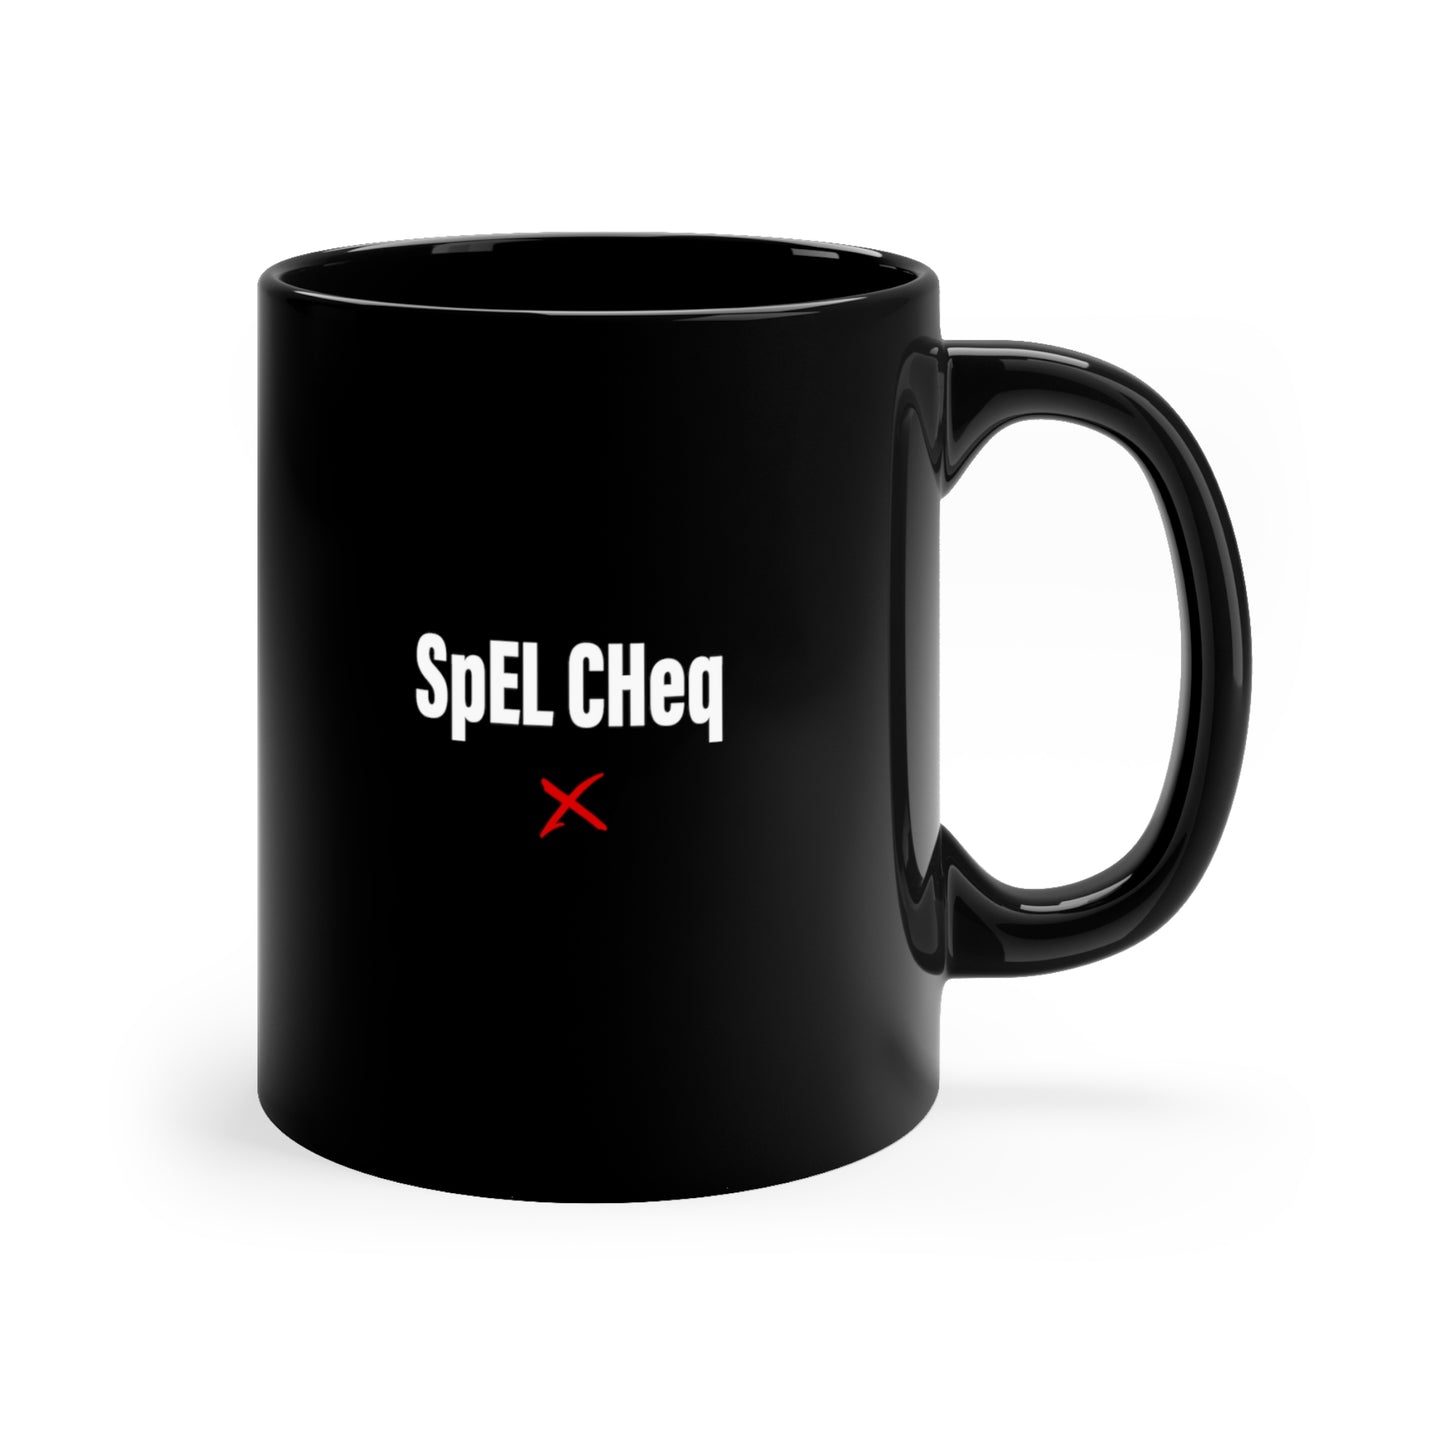 SpEL CHeq - Mug